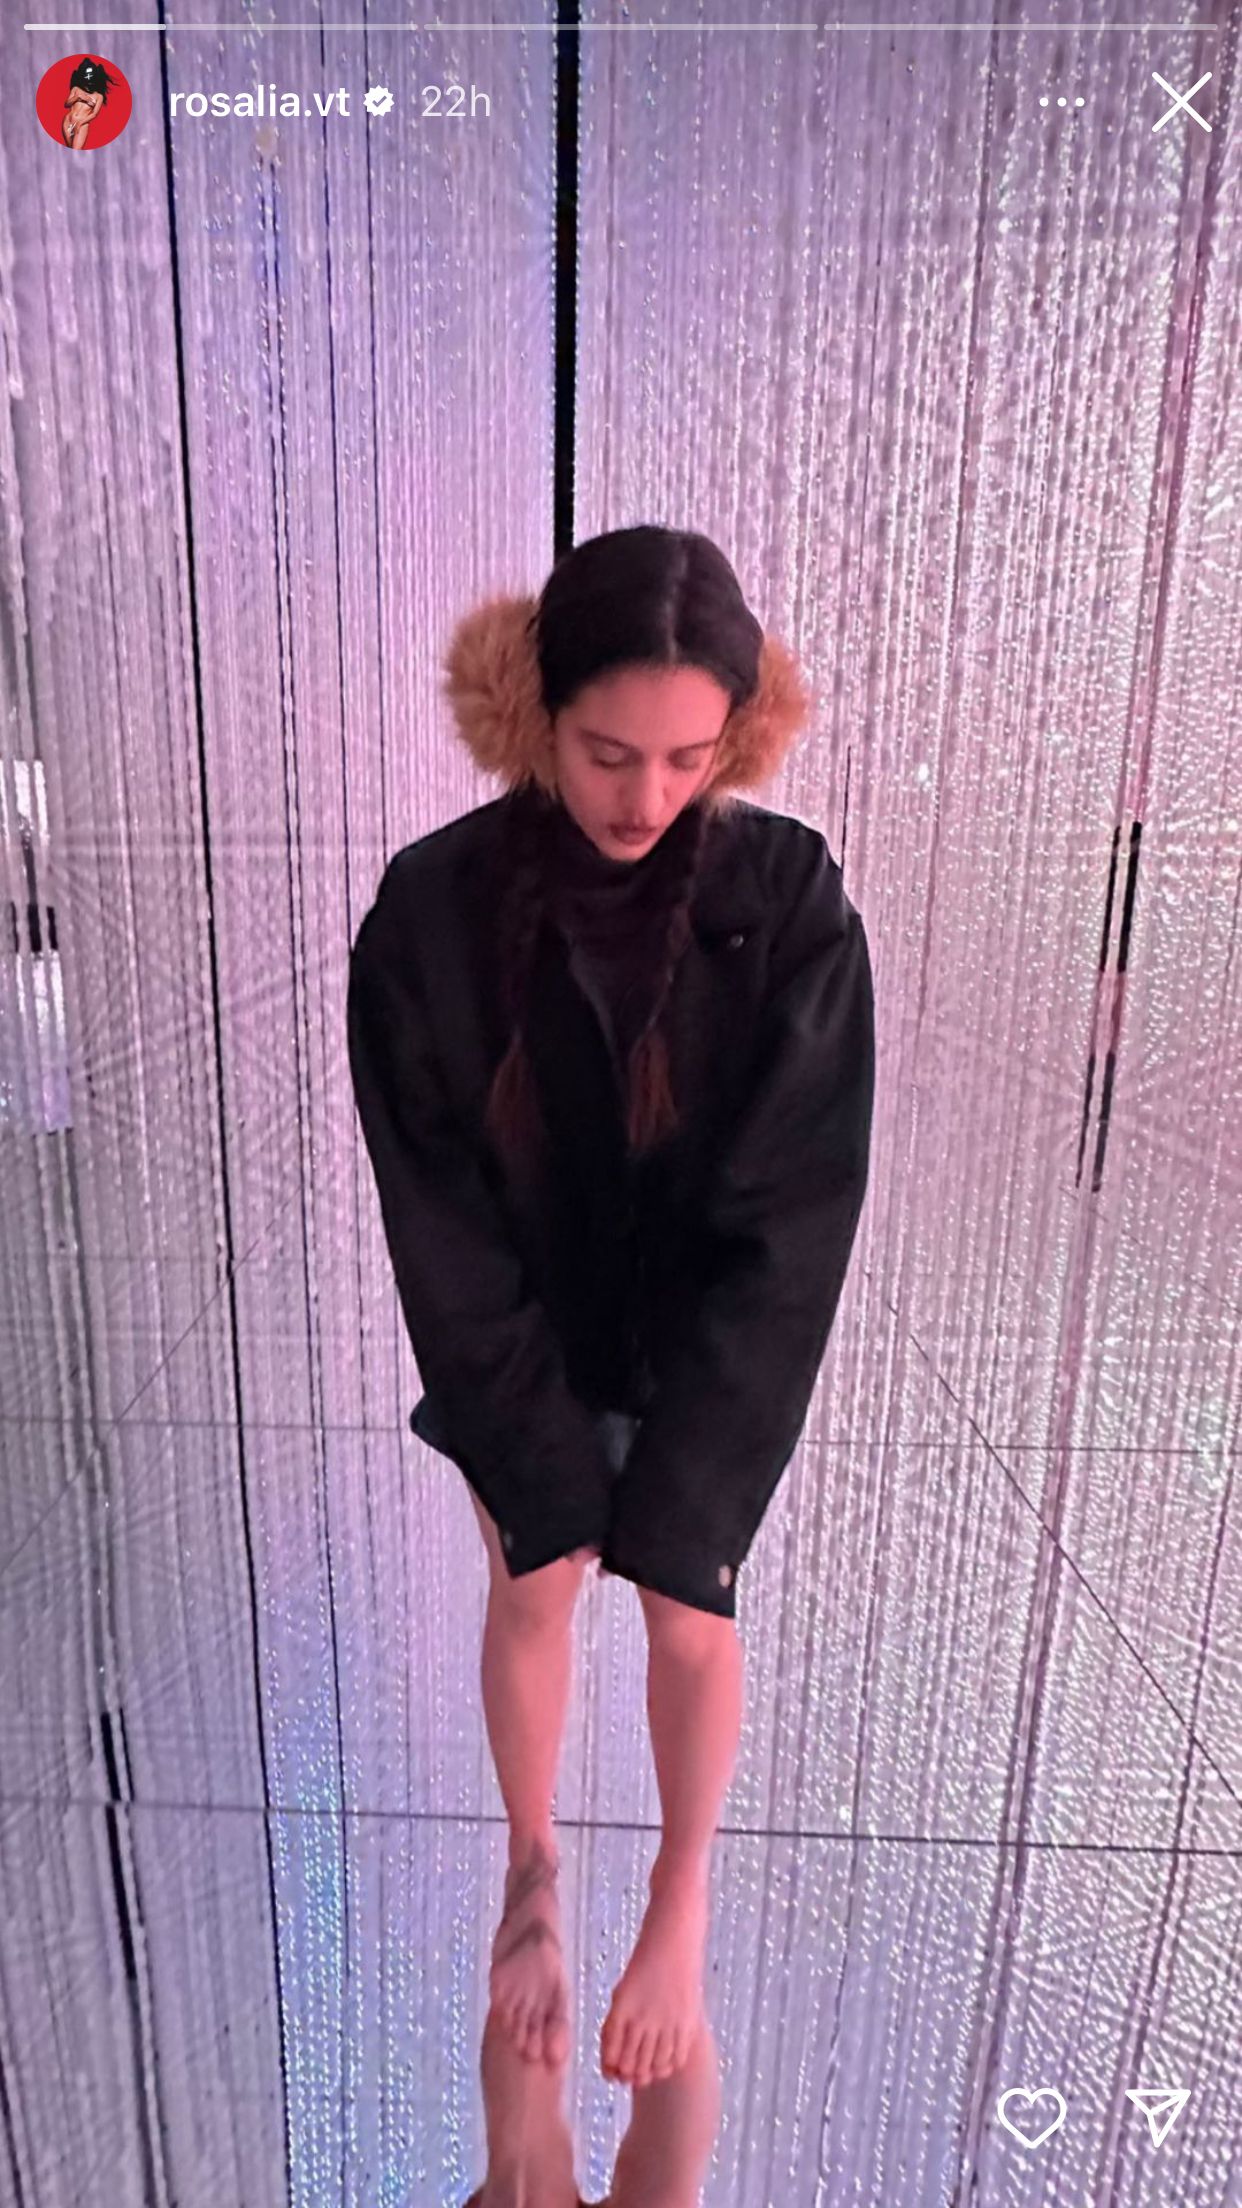 La sorprendente actuación de Rosalía en el desfile de Louis Vuitton en París